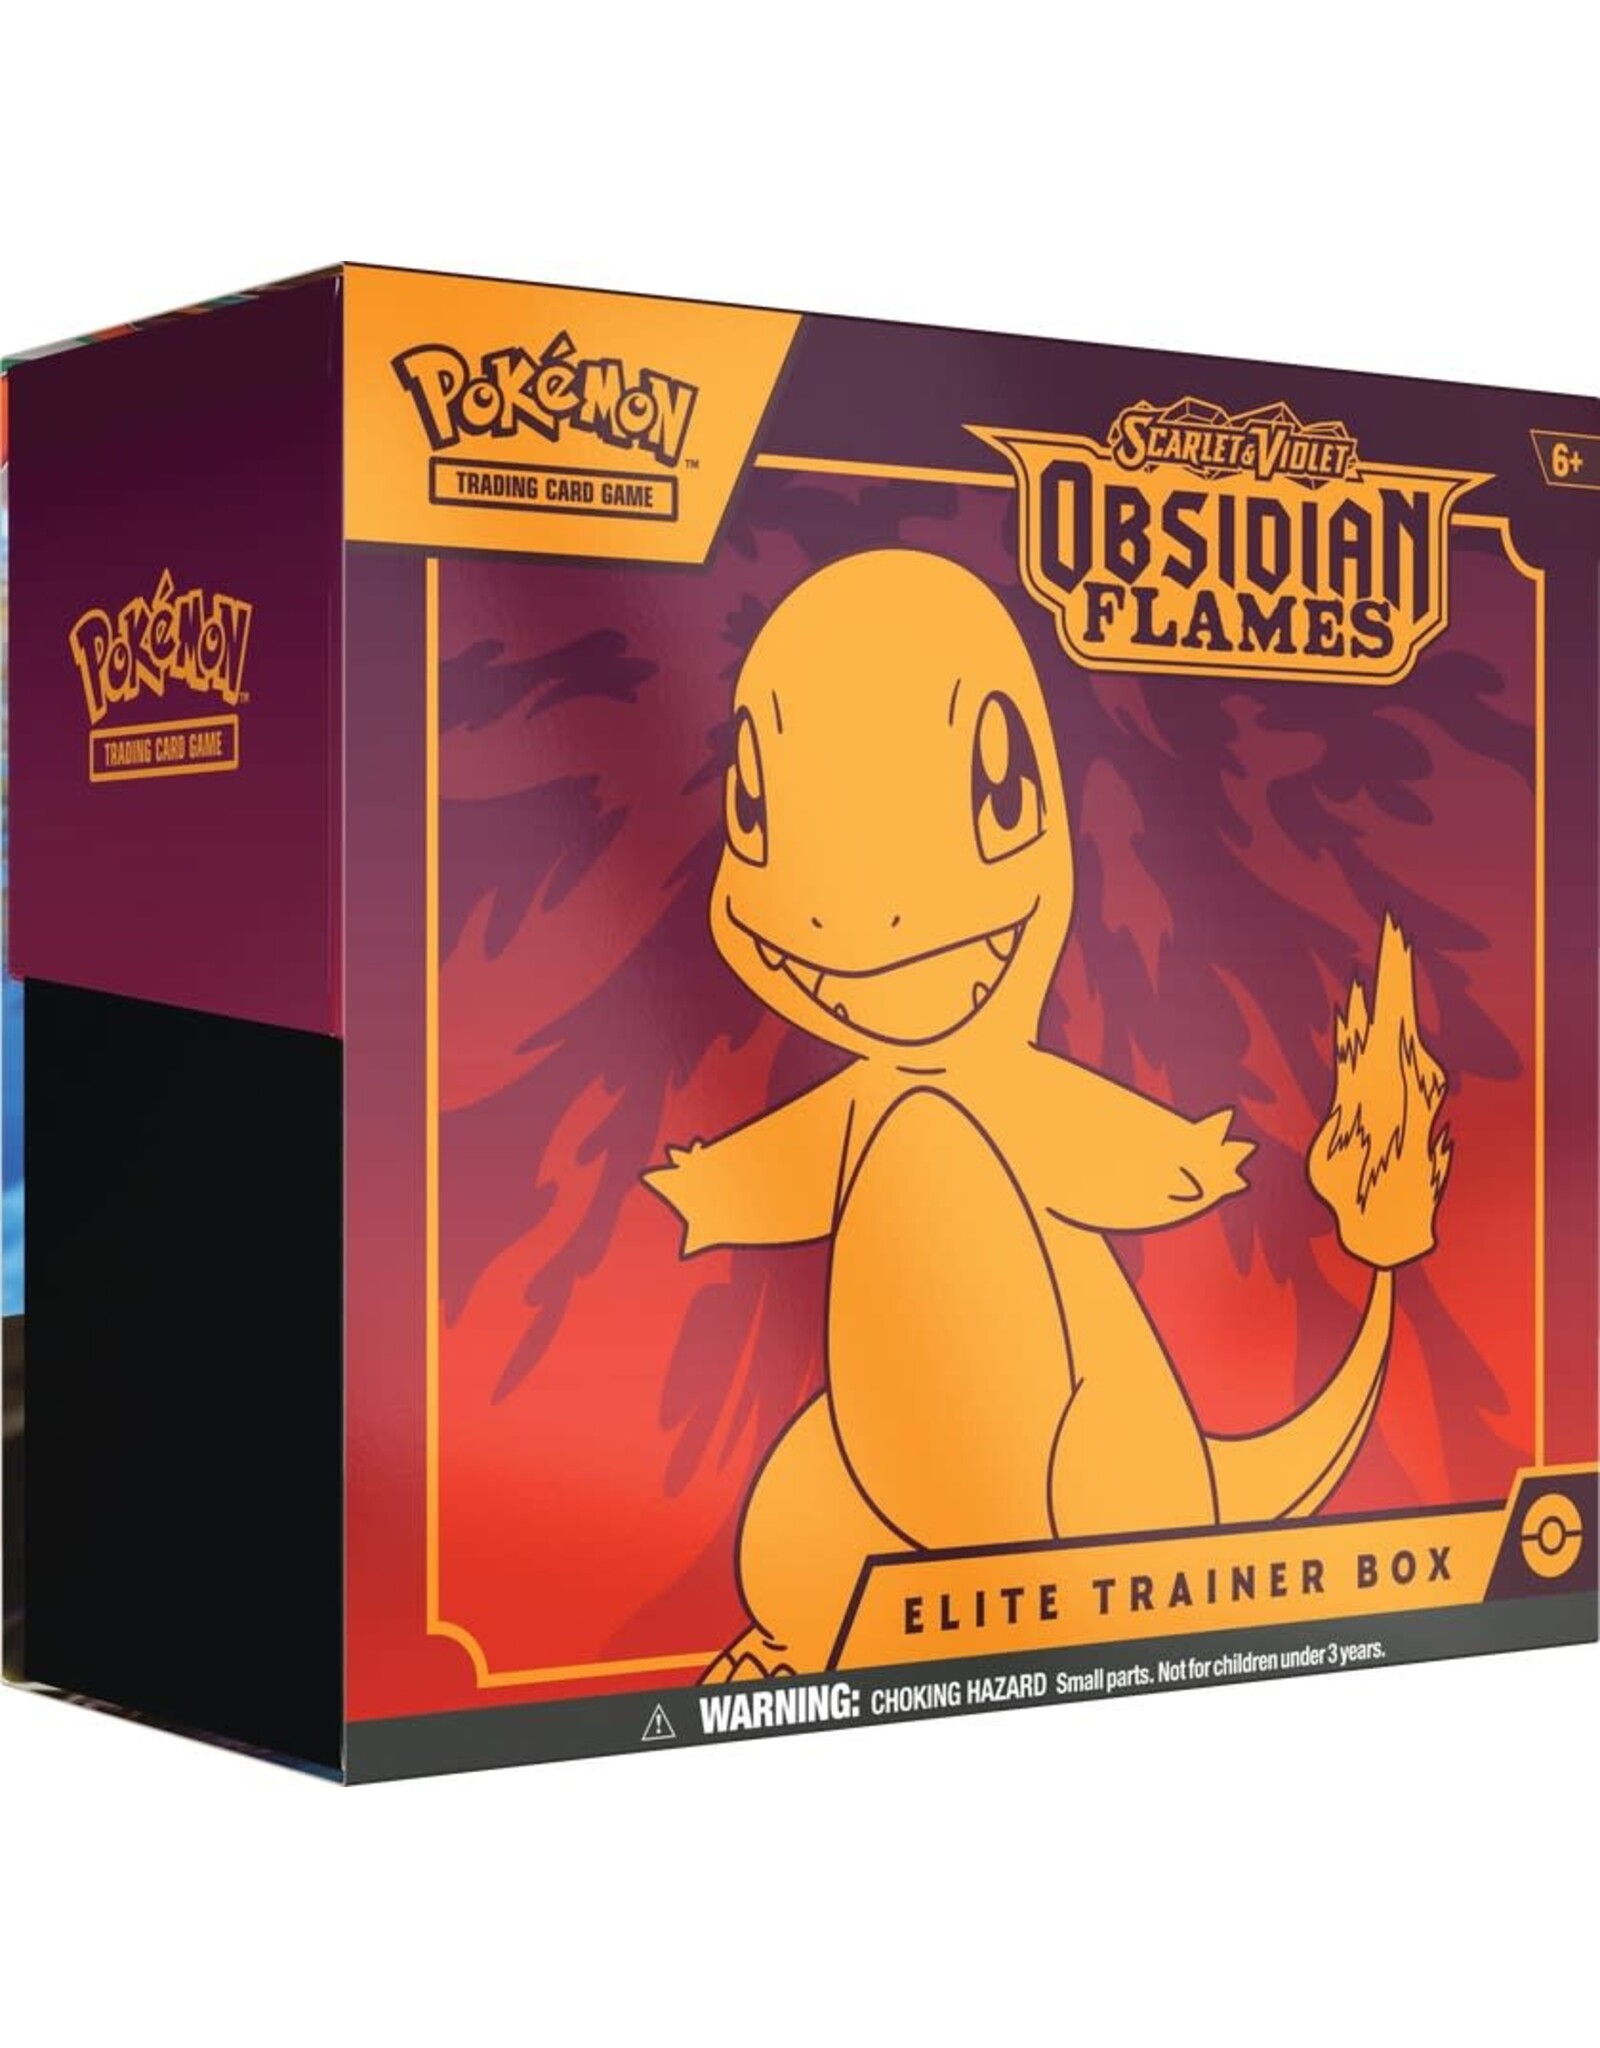 Pokemon Pokemon Elite Trainer Box: Obsidian Flames